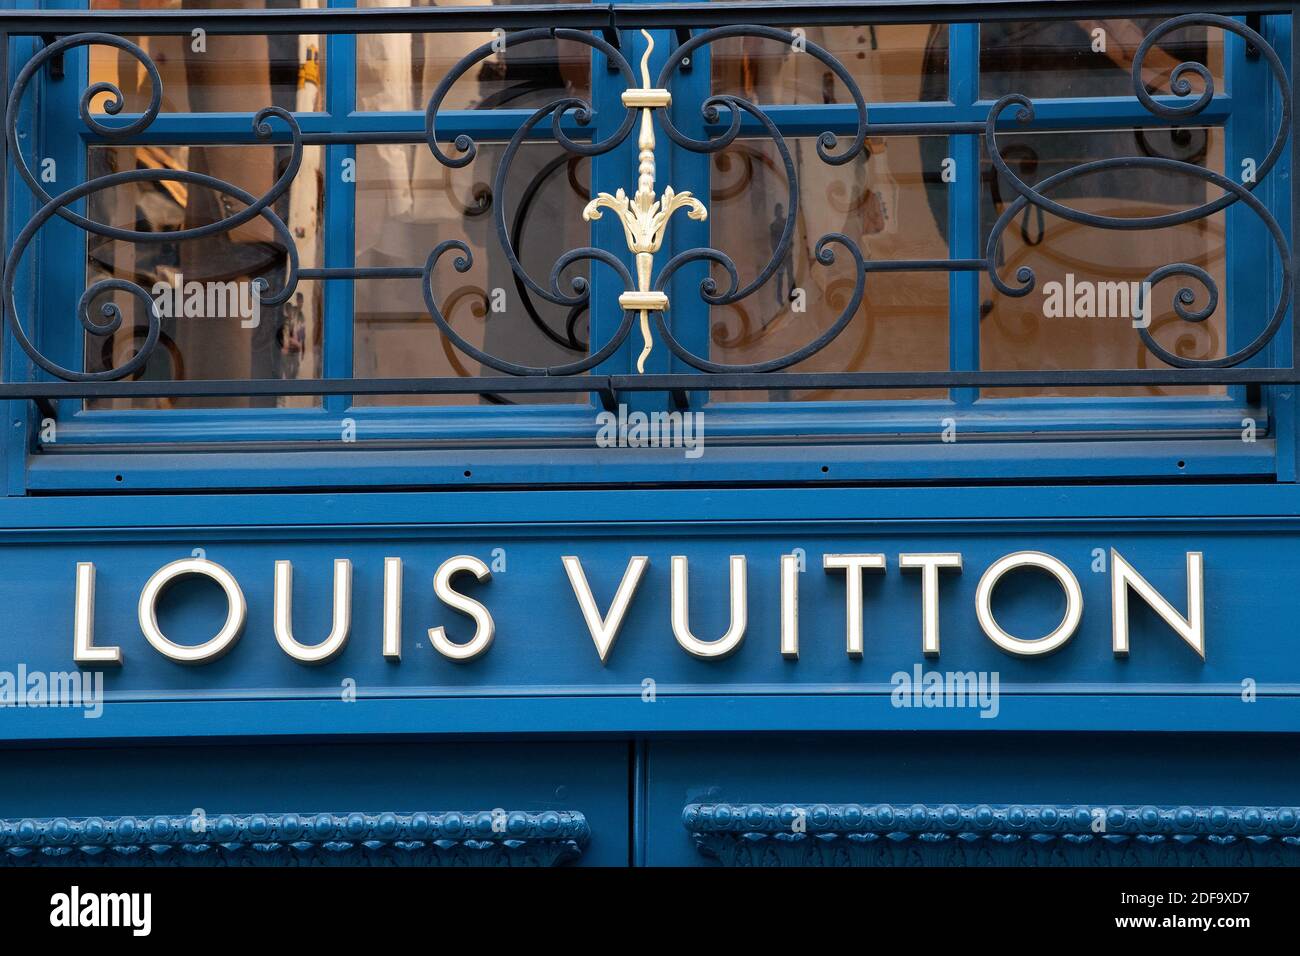 Louis Vuitton dévoile sa deuxième adresse iconique sur les Champs